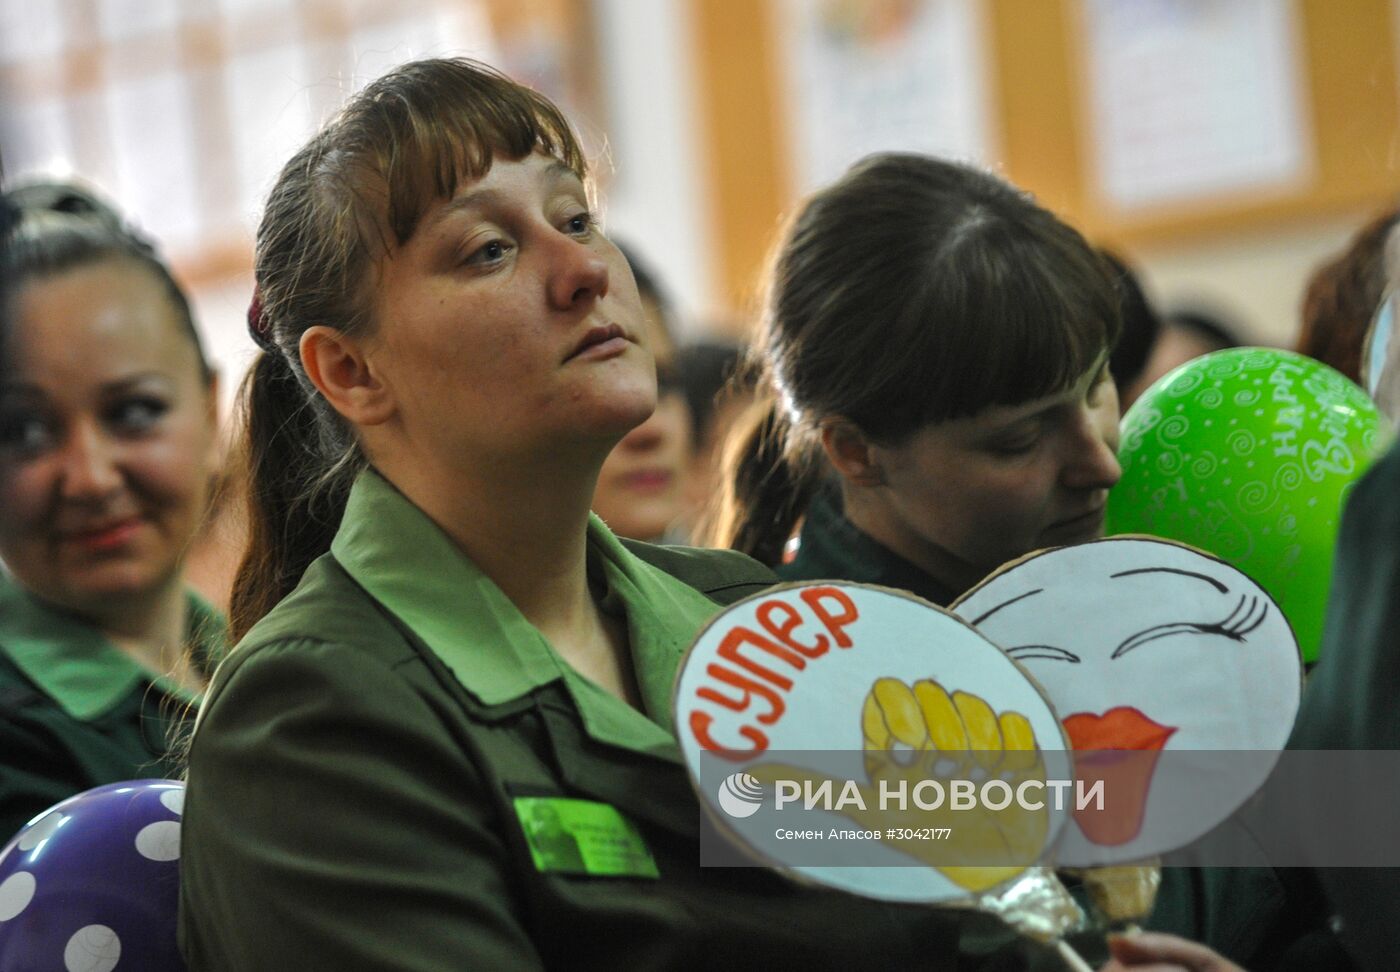 Конкурс красоты среди заключенных "Мисс весна - 2017" в Приморском крае